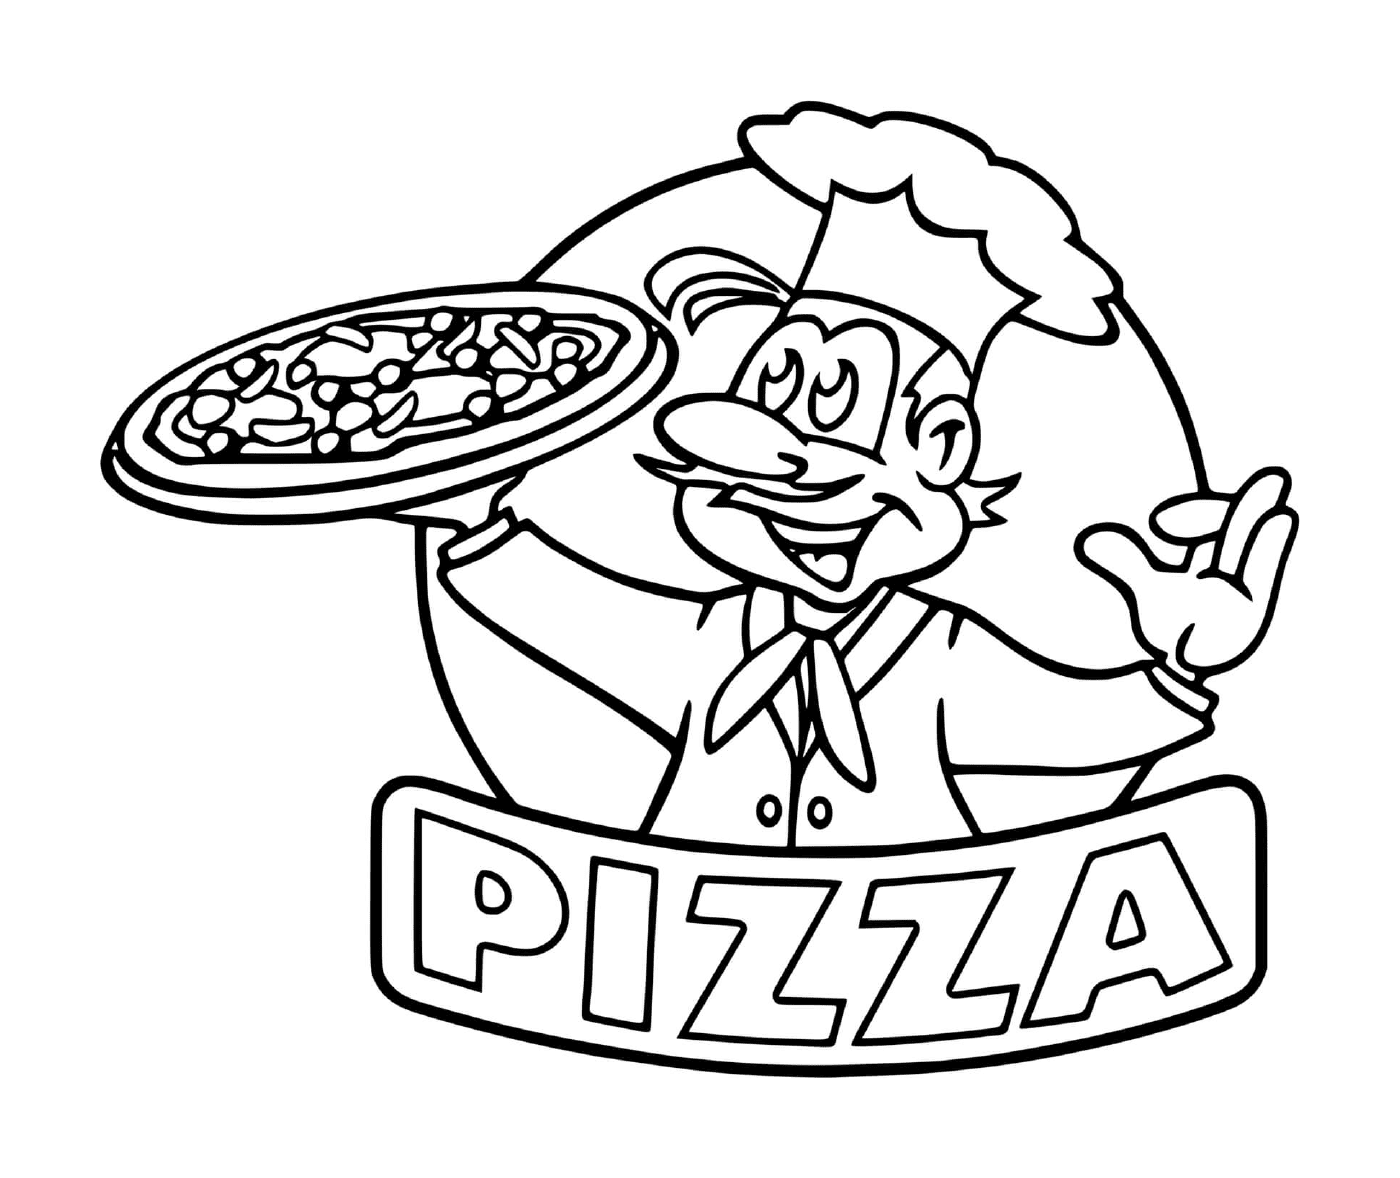   Le logo du chef de restaurant de pizza 